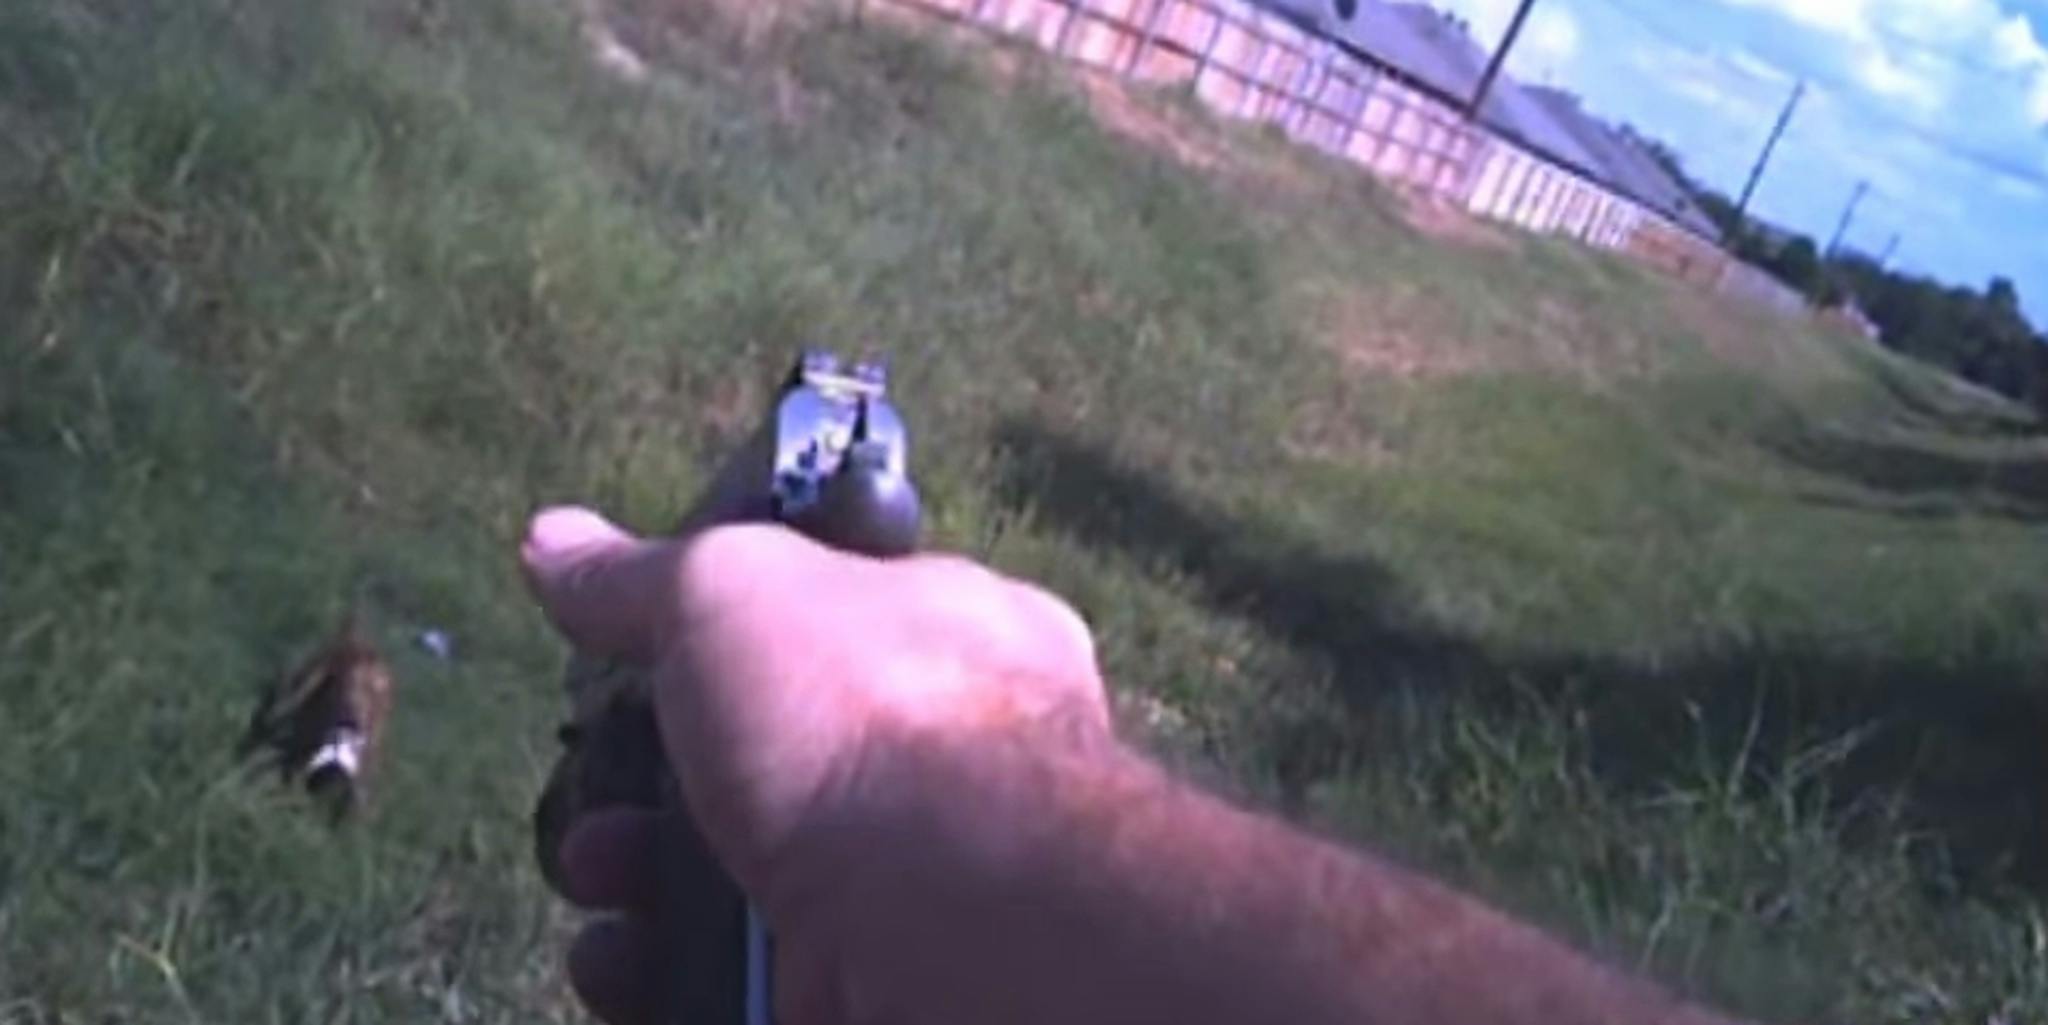 Disturbing video shows a Texas cop shoot a dog for no reason